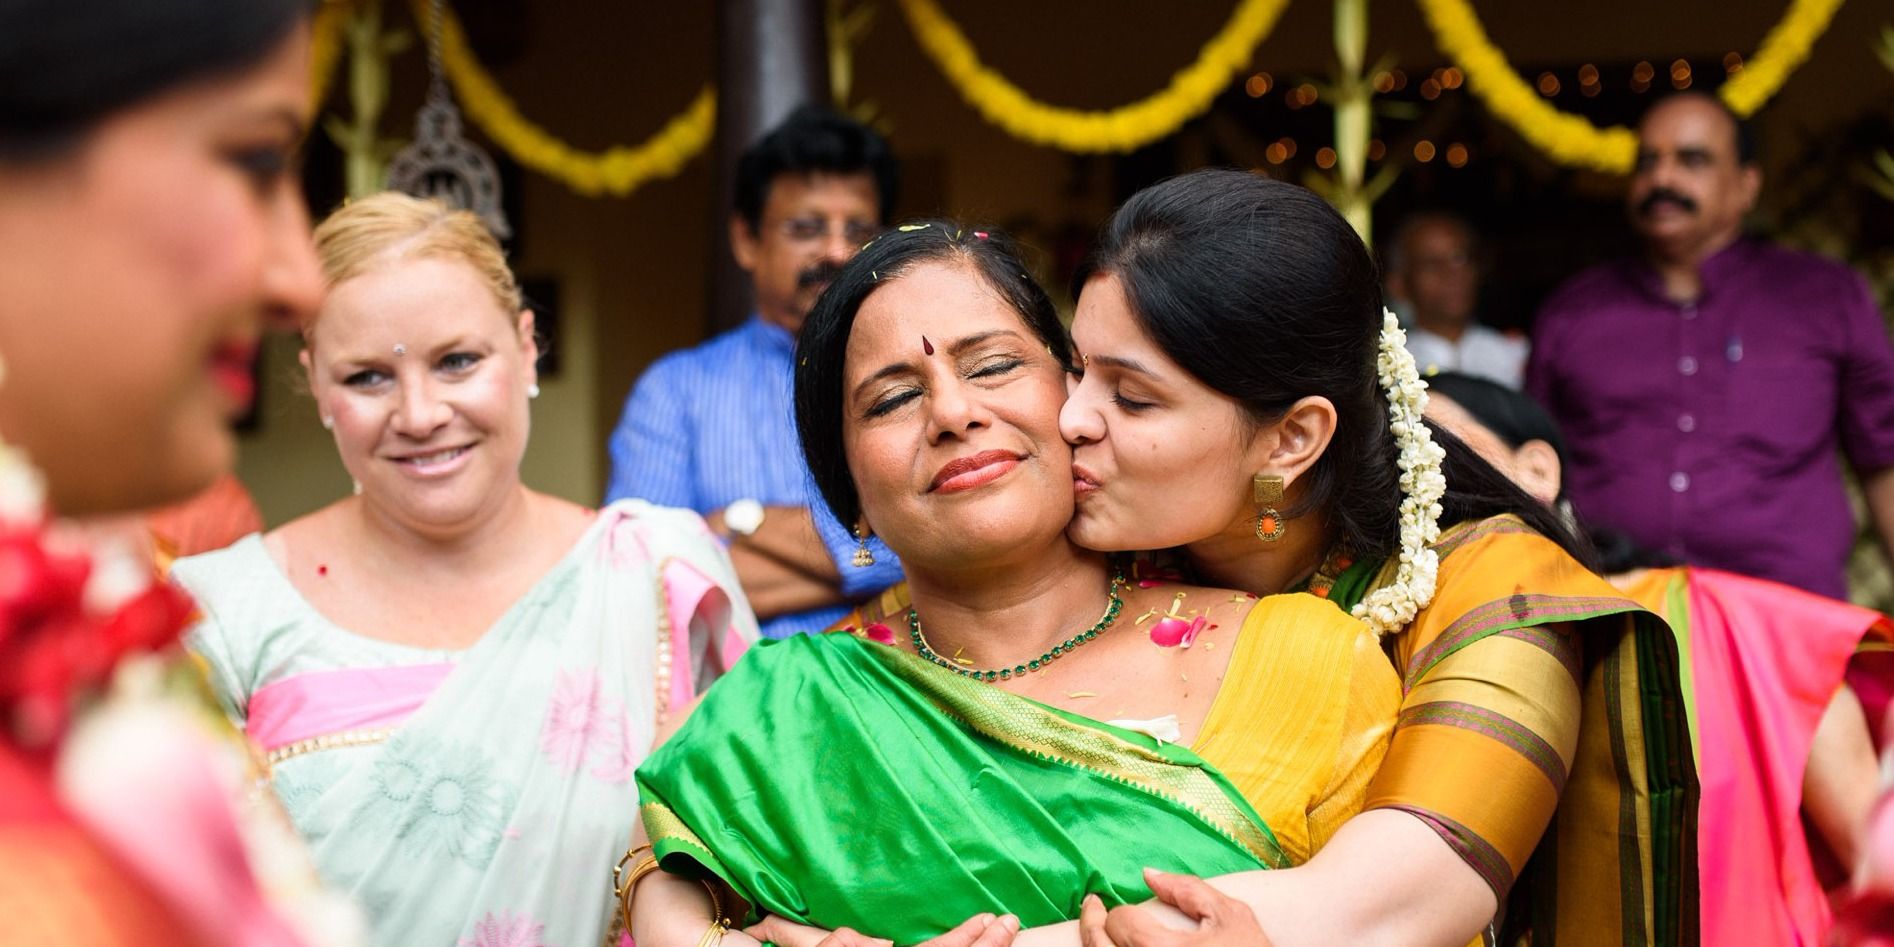 सिंगल मदर द्वारा संपन्न की गई बेटी की शादी पितृसत्तात्मक समाज पर है तमाचा